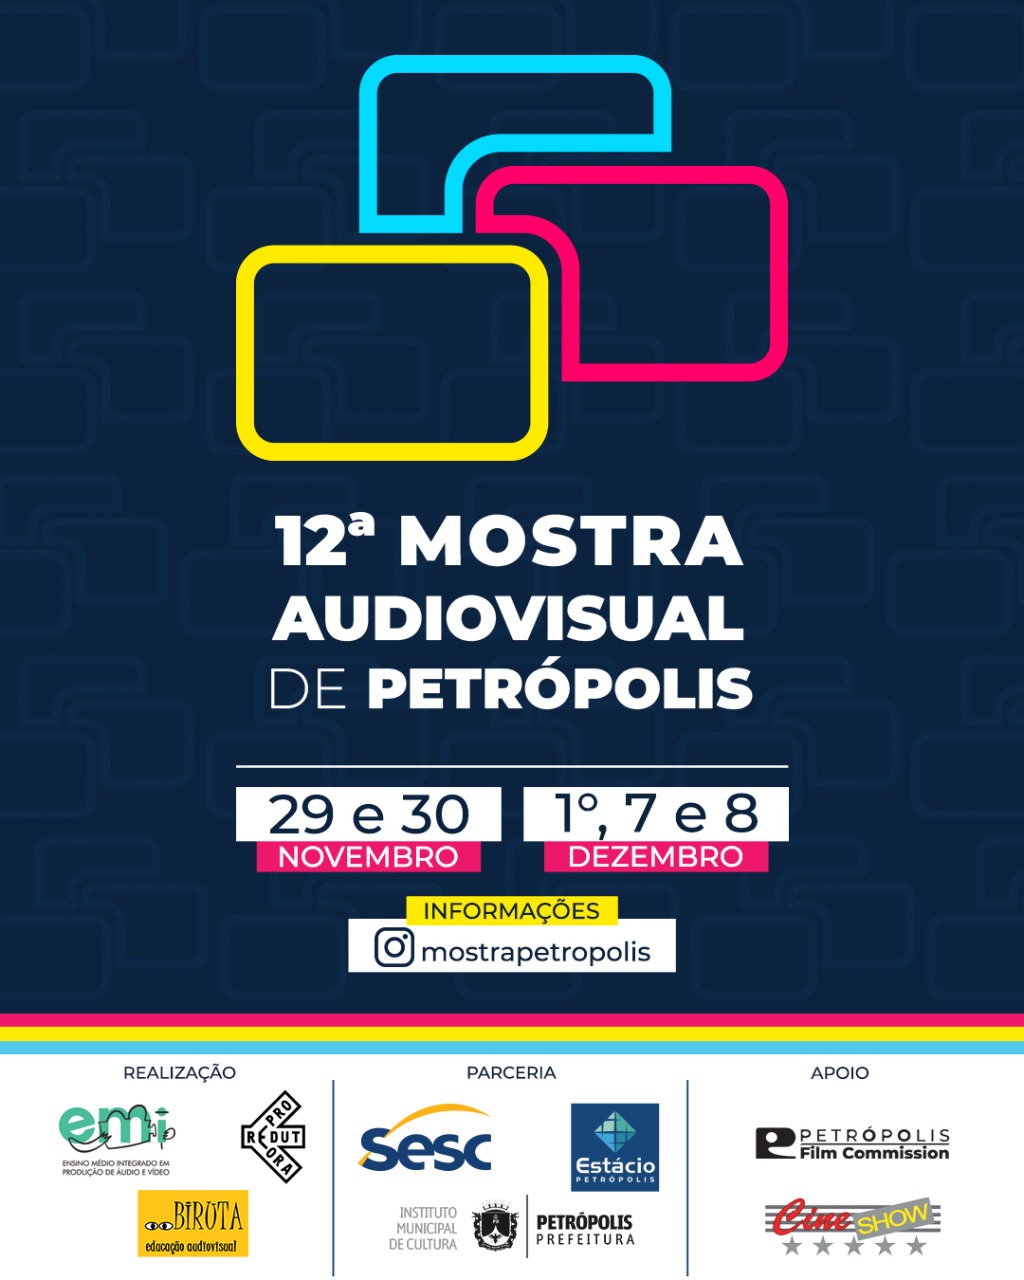 12ª Mostra Audiovisual de Petrópolis